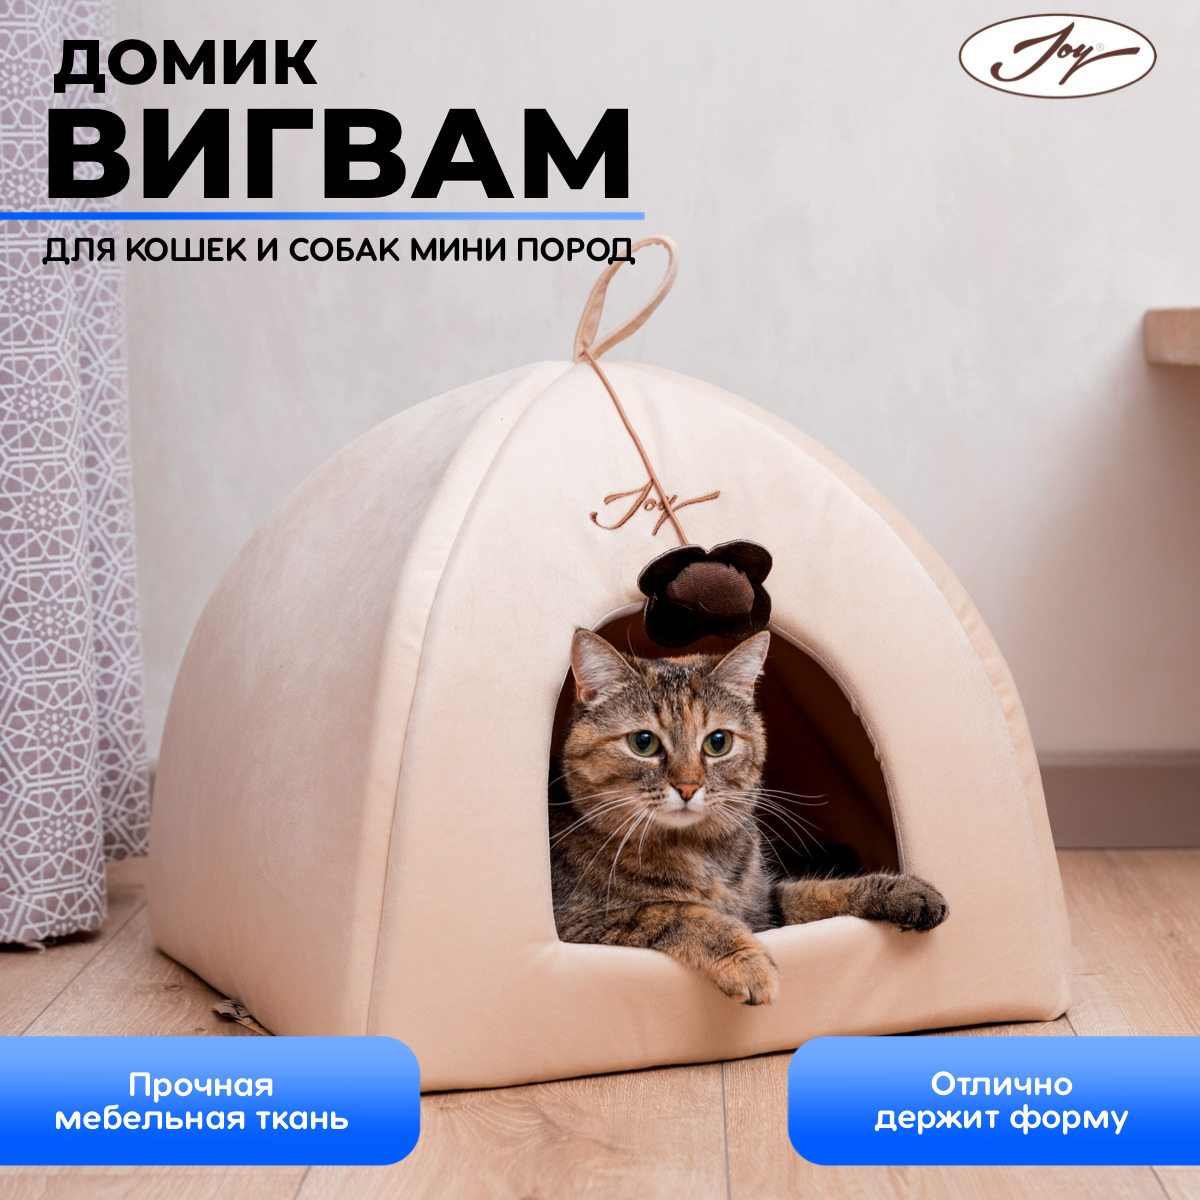 Родильный домик для кошки своими руками | Животные | WB Guru